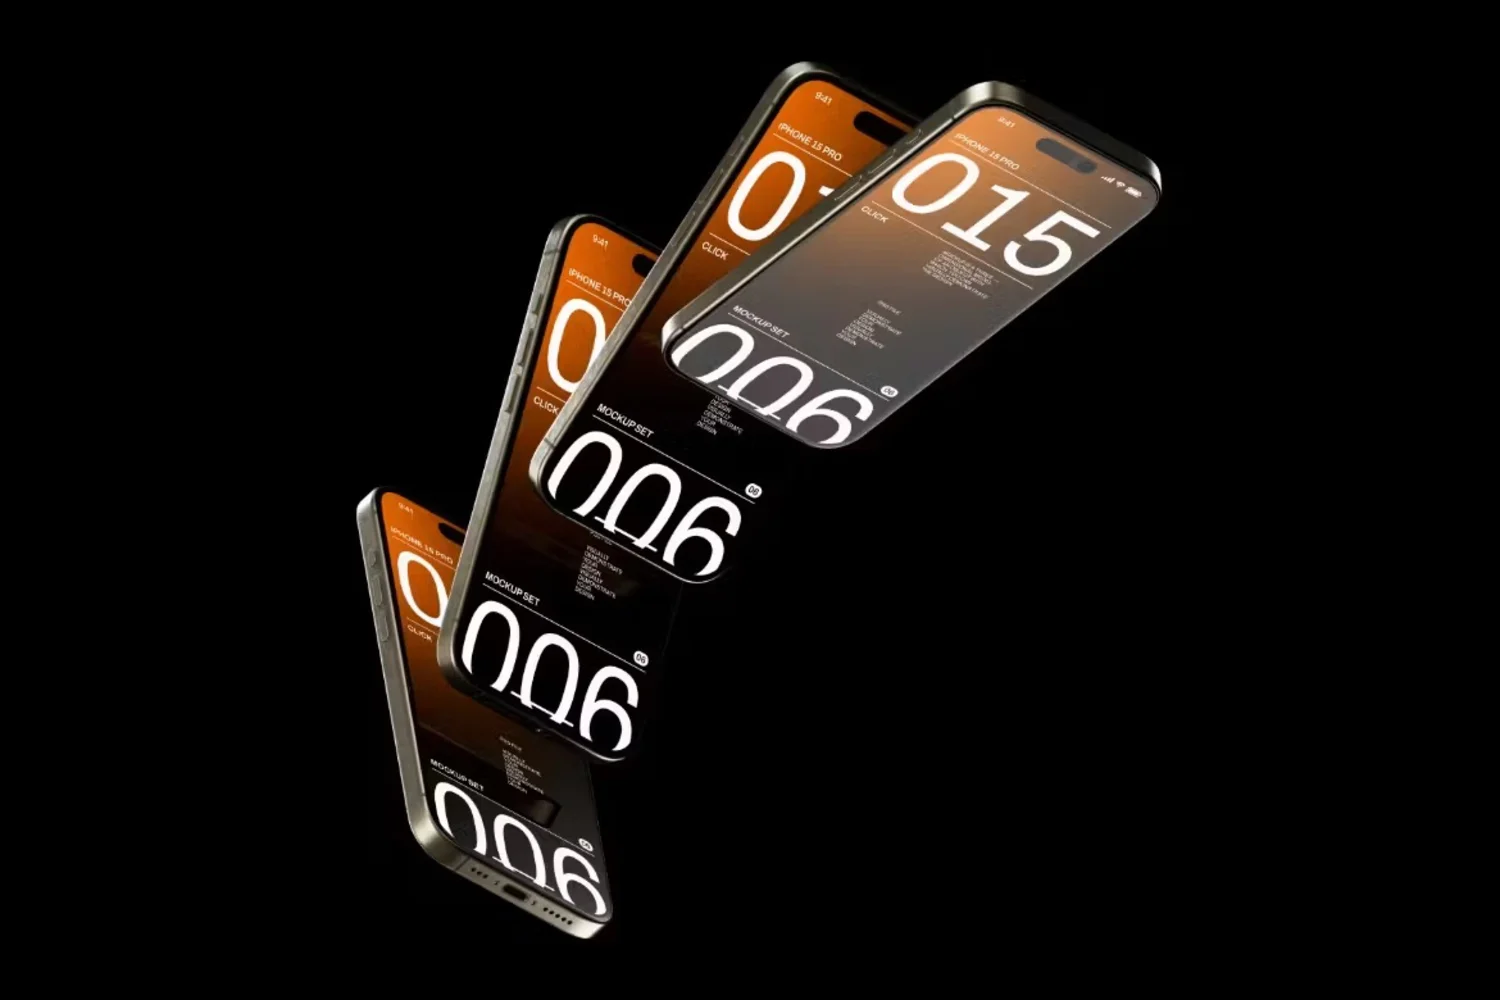 5237 6款酷炫工业风多角度展示的苹果iPhone 15 Pro手机样机素材 iPhone 15 Pro Mockup Set@GOOODME.COM